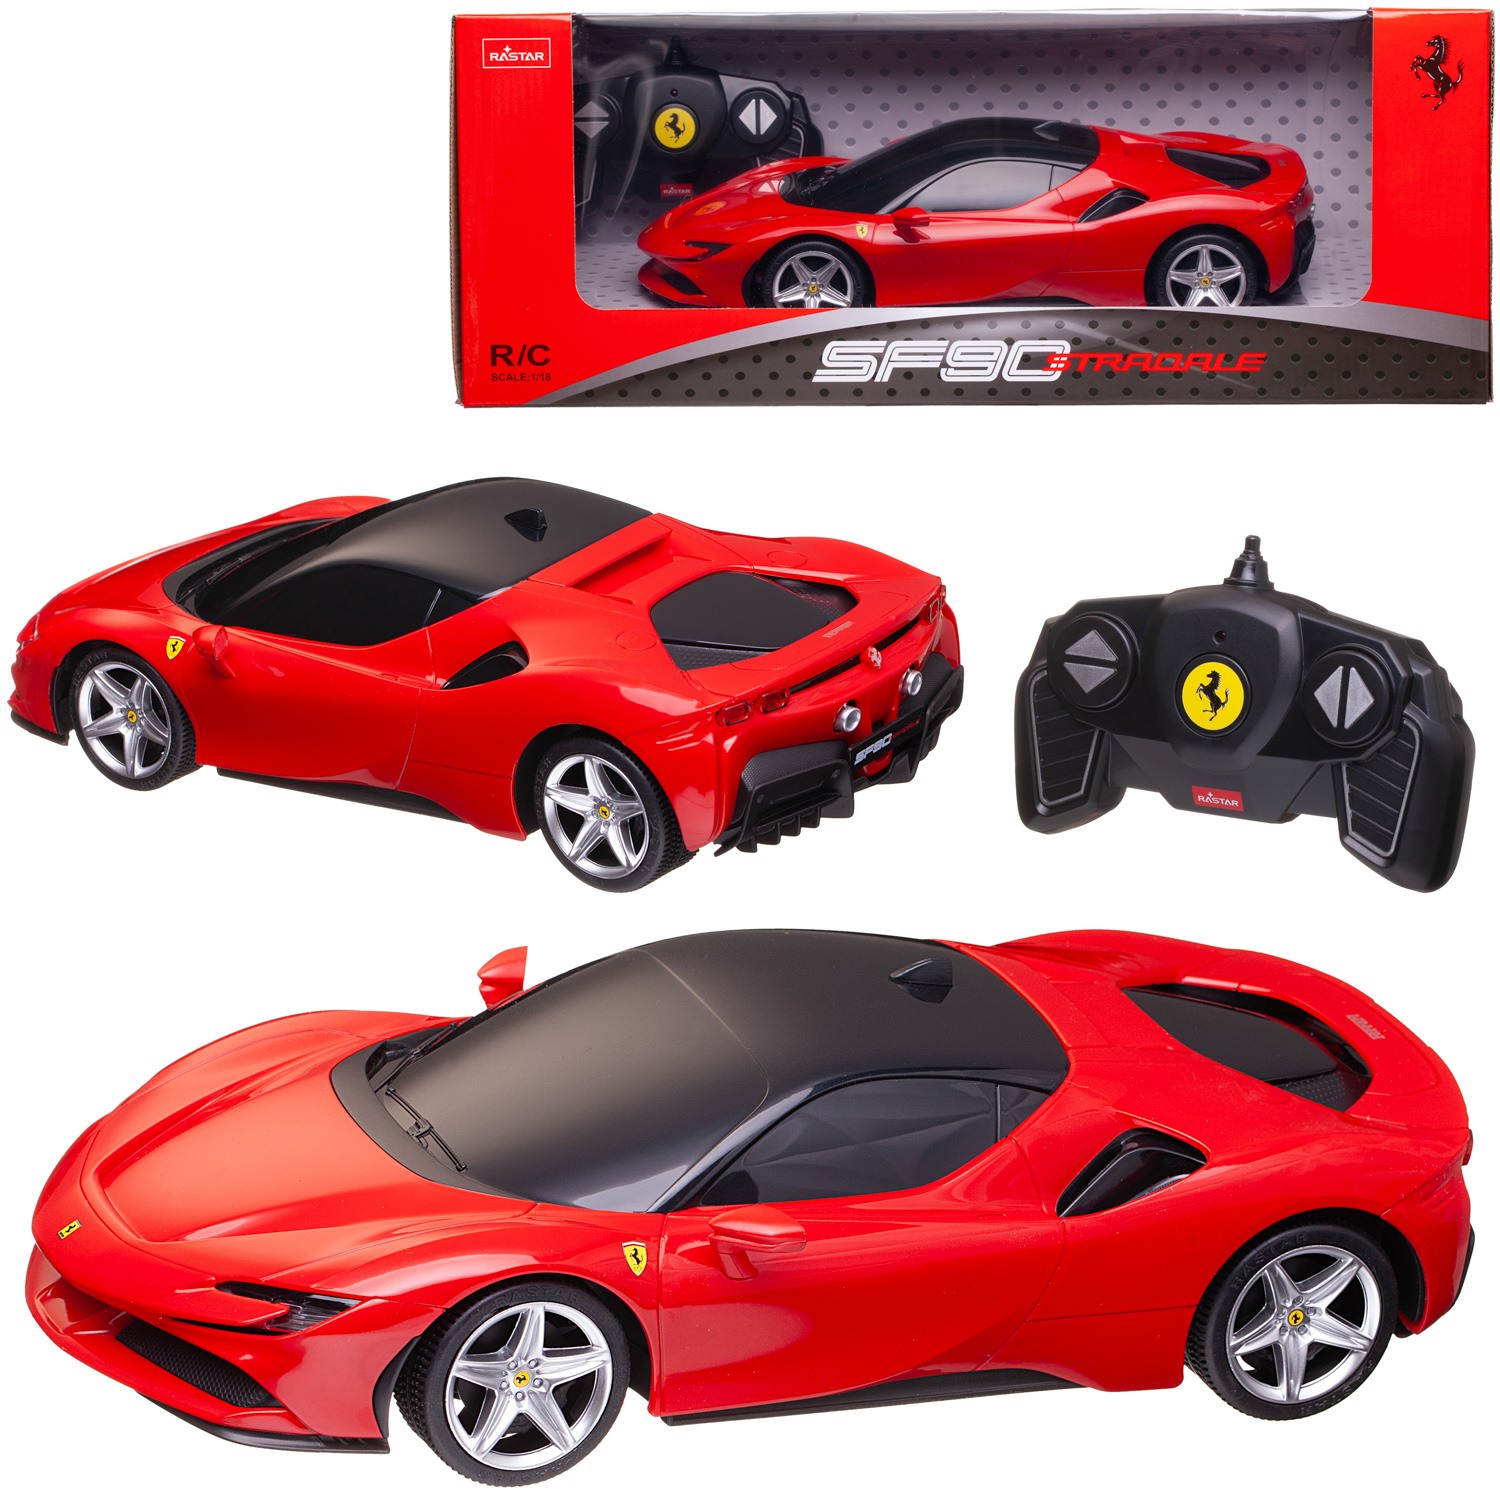 Машина р/у 1:18 Ferrari SF90 Stradale 2,4G, цвет красный, фары светятся, 25.9*12.7*7 радиоуправляемая машина cross world yj96 3a advanced фары светятся 1103272